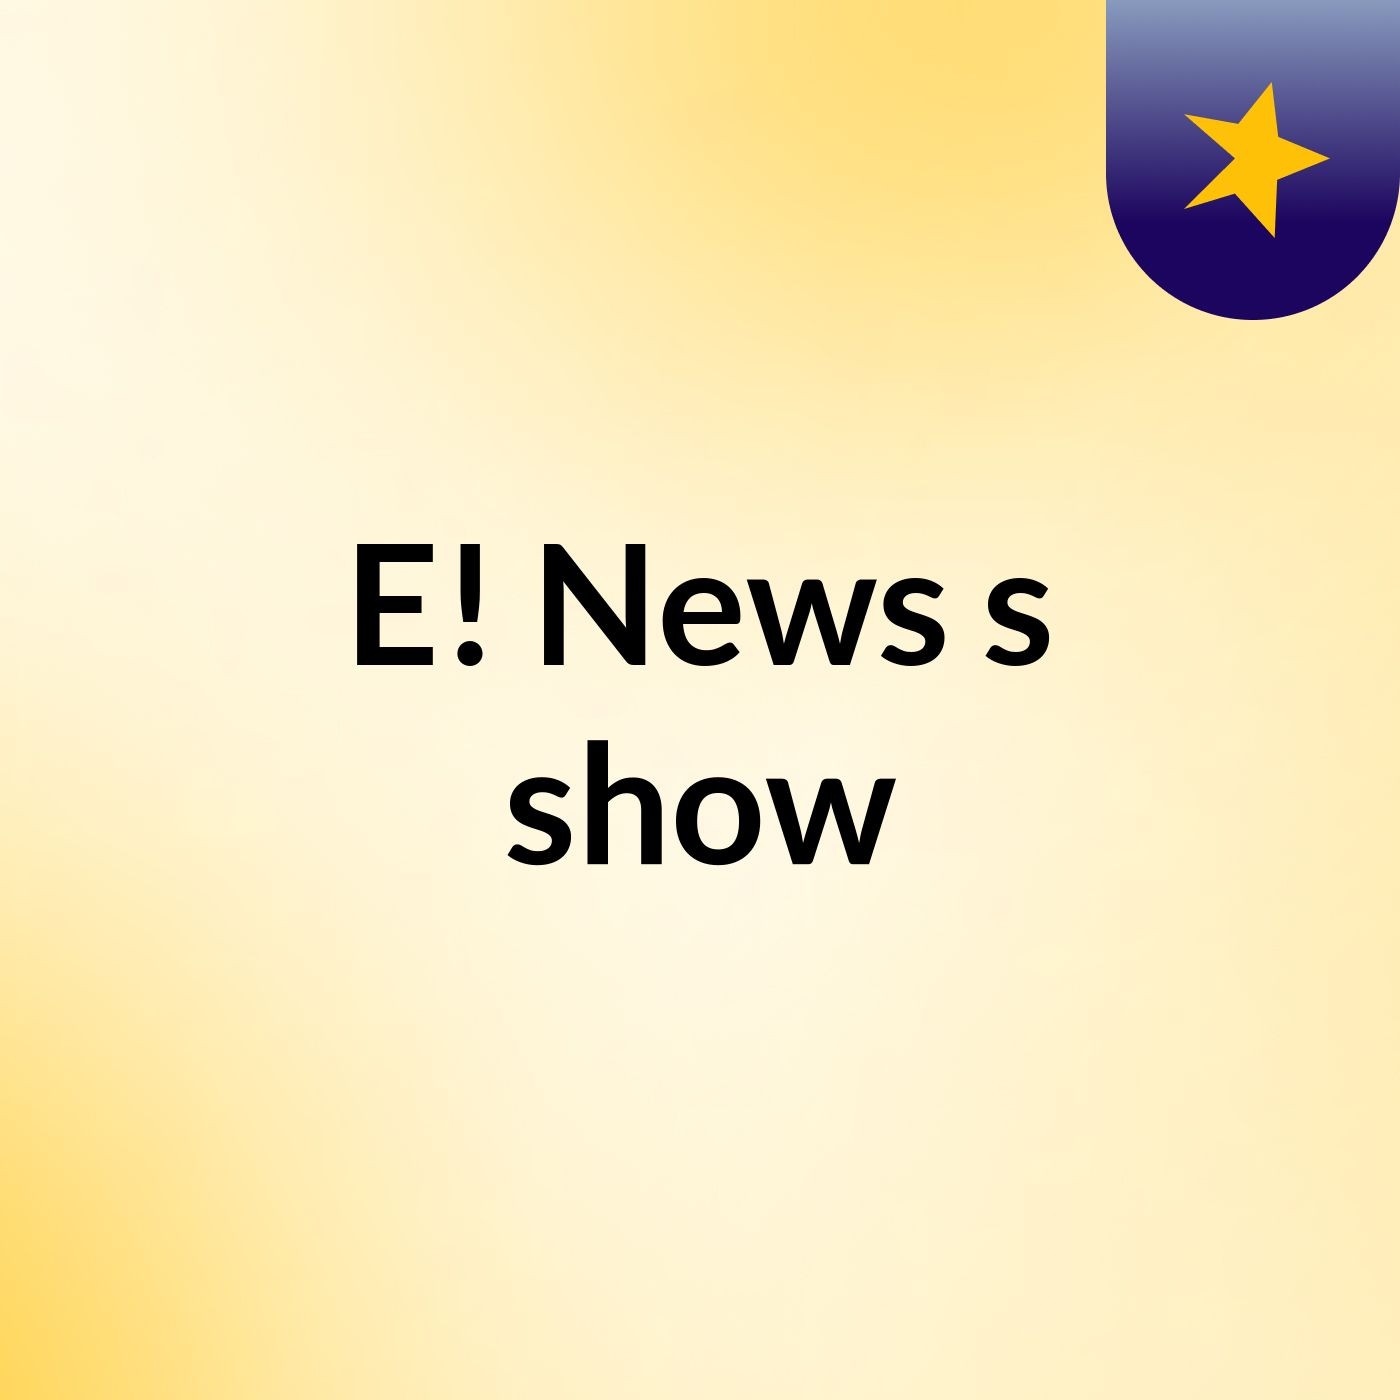 E! News's show